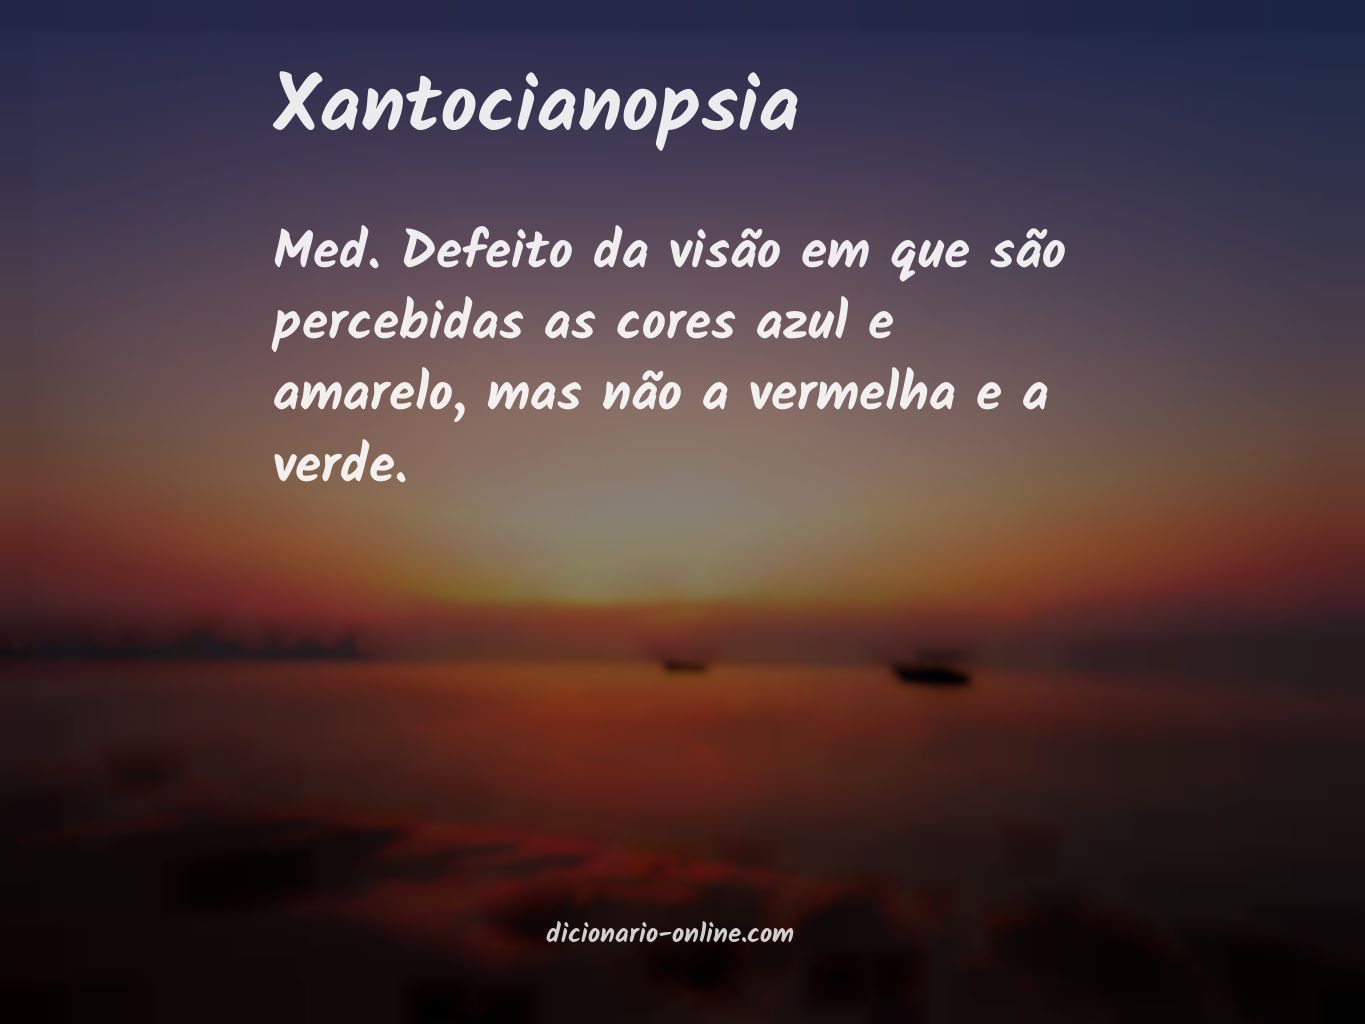 Significado de xantocianopsia